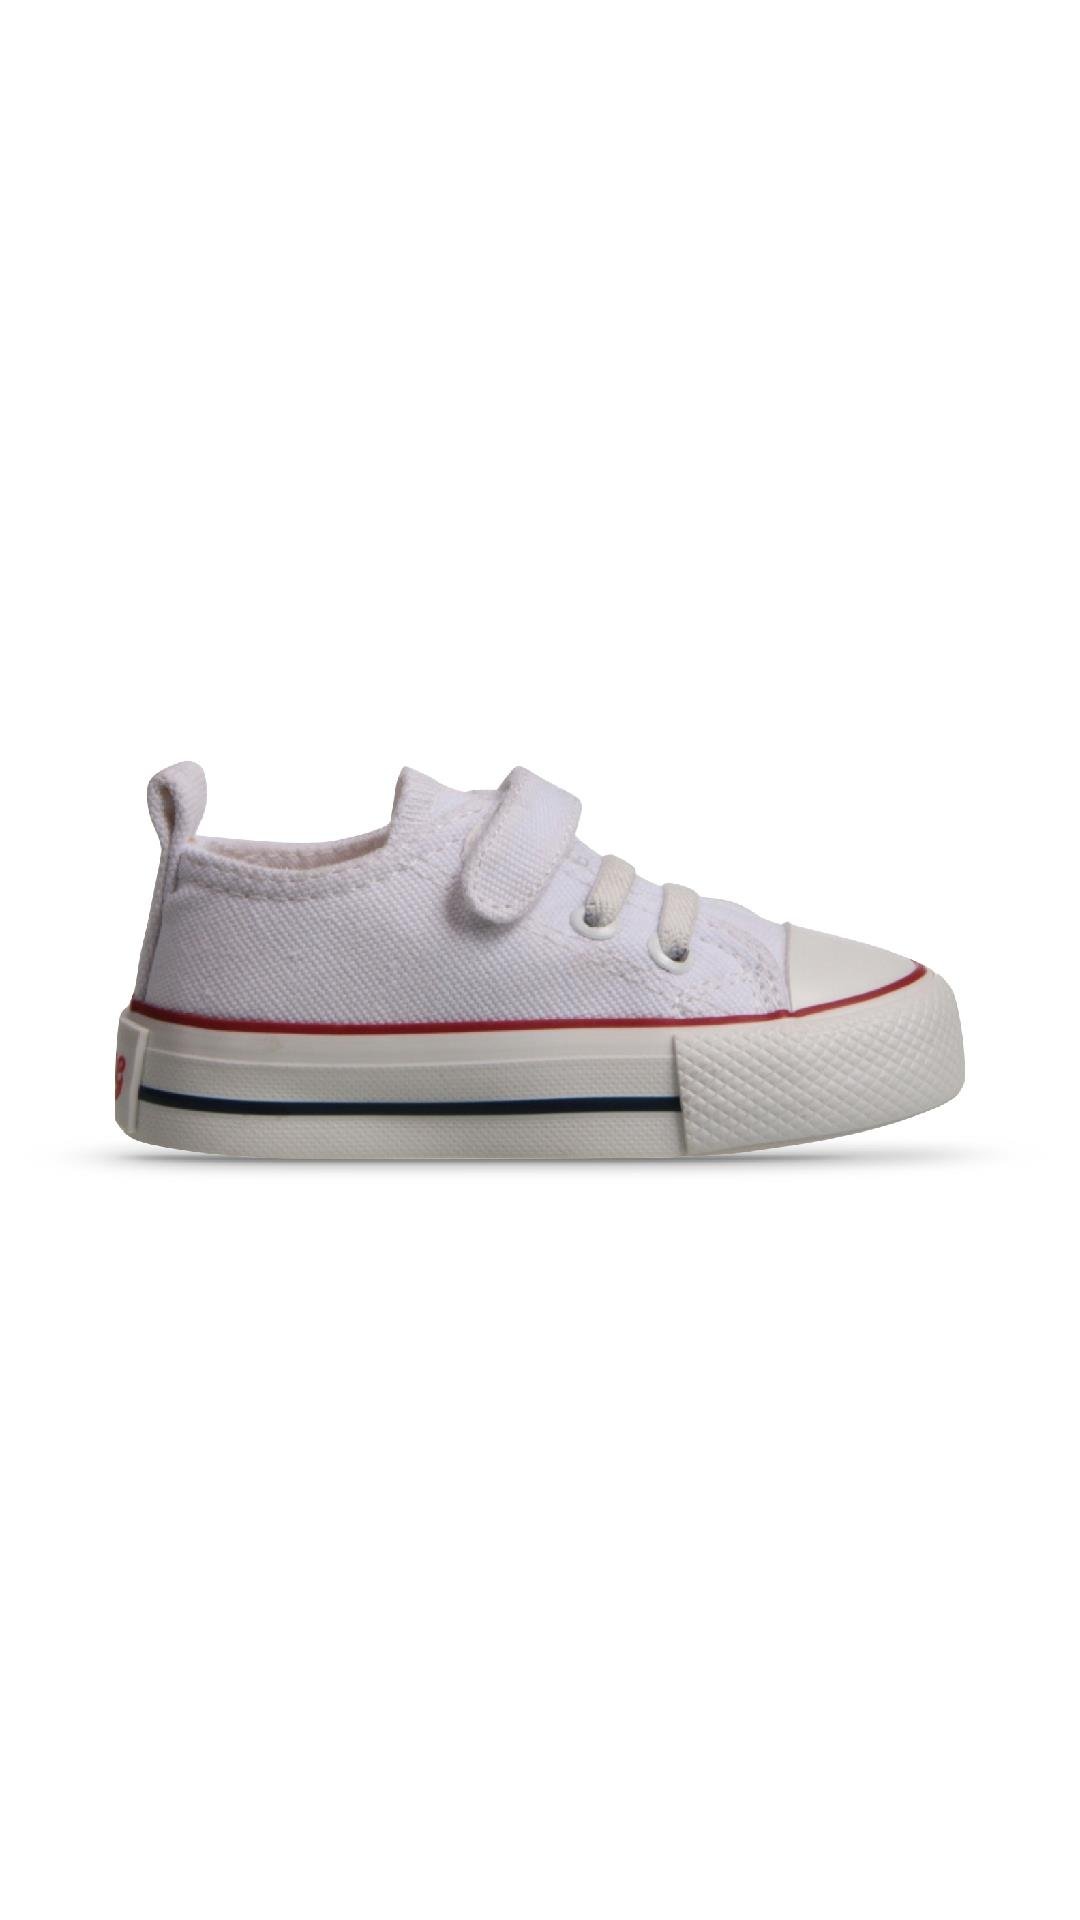 Çocuk Beyaz Kanvas Ayakkabı Modelleri ve Fiyatları